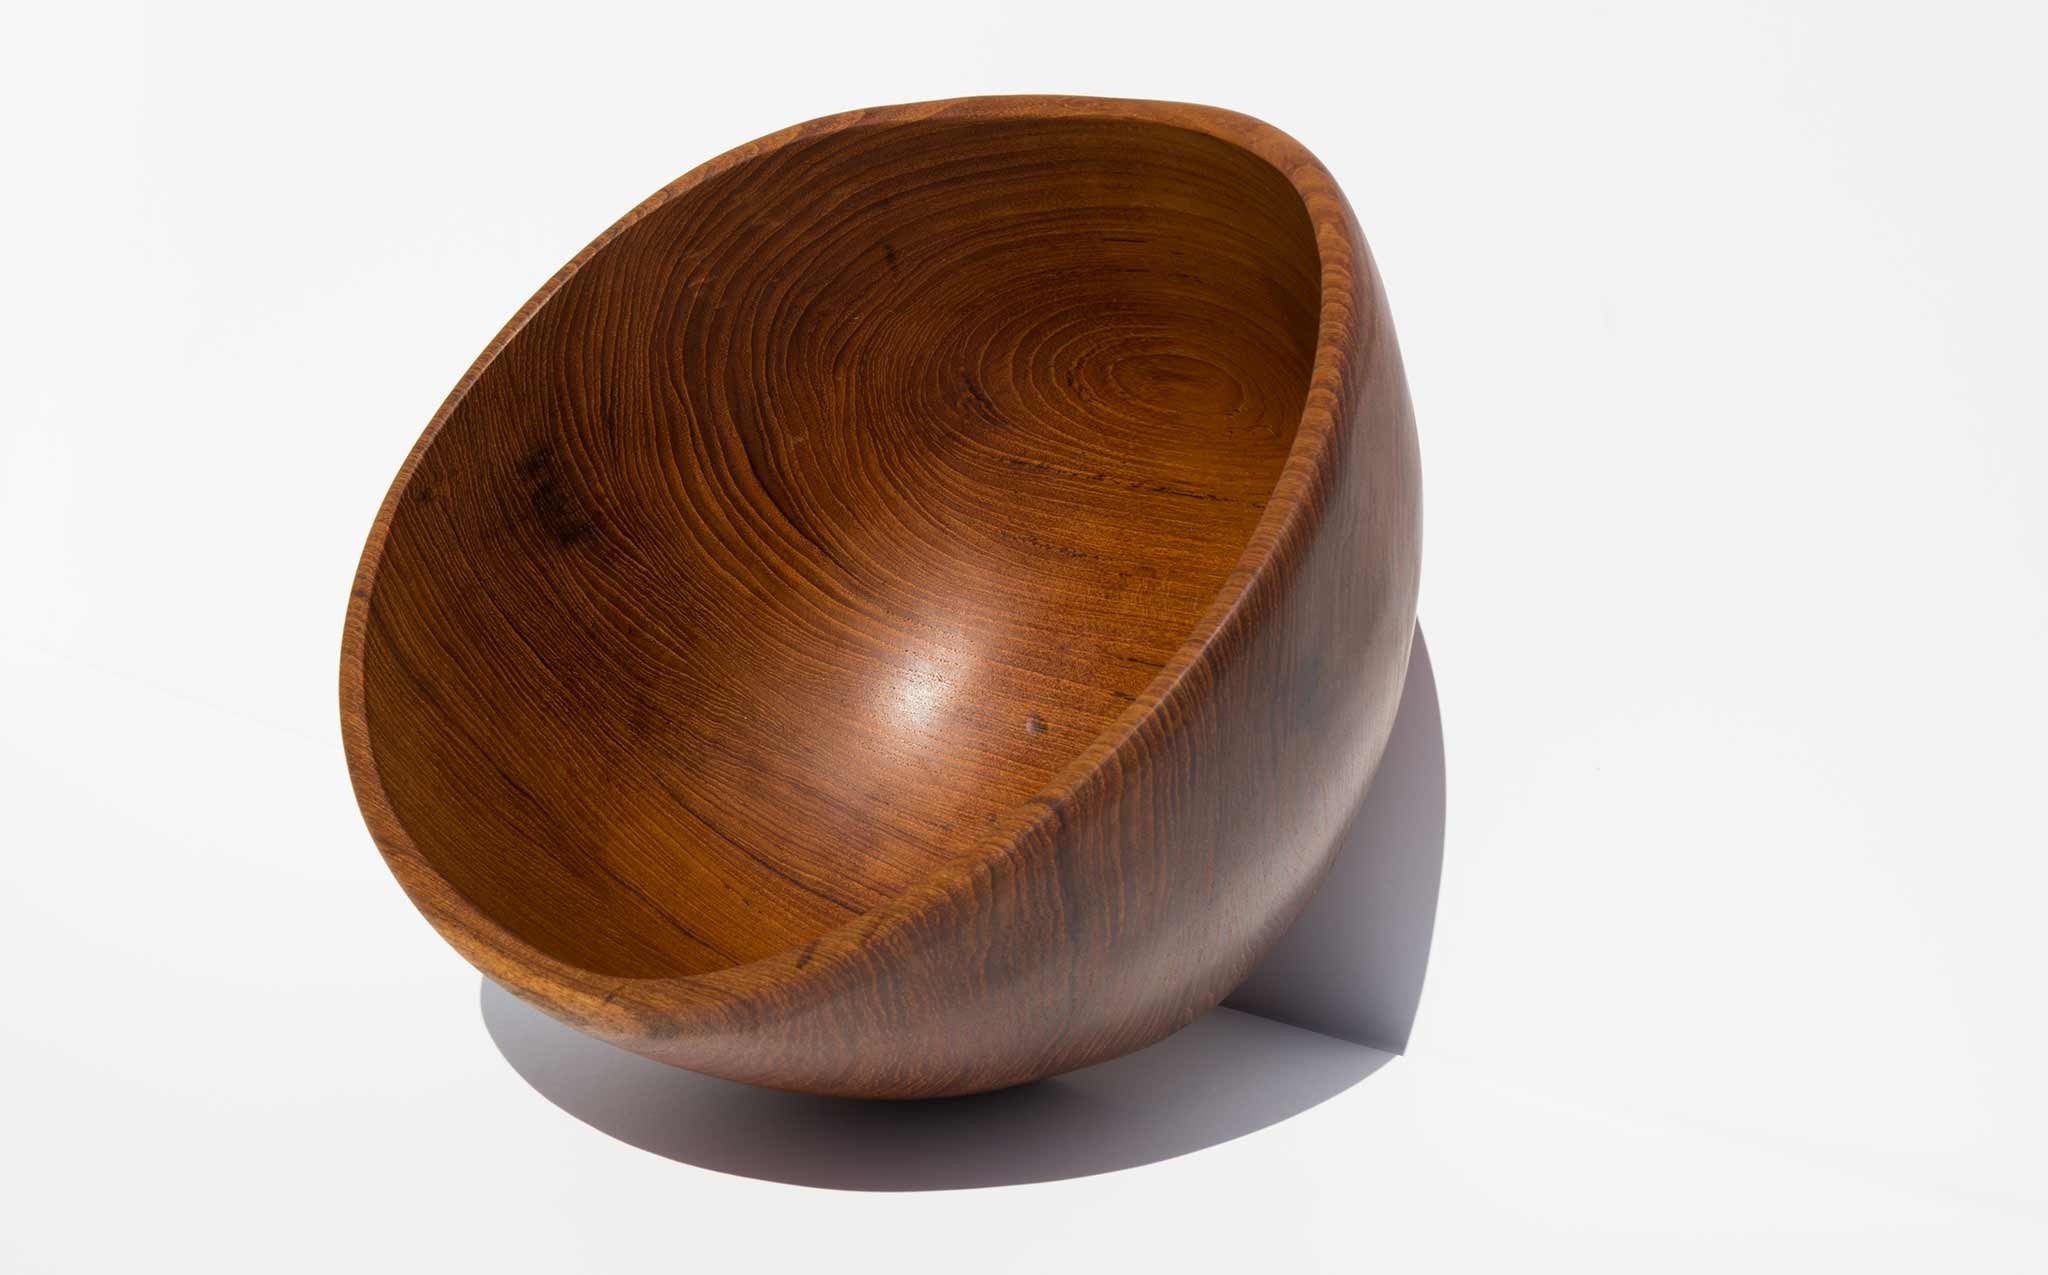 solid teak bowl in the style of Finn Juhl